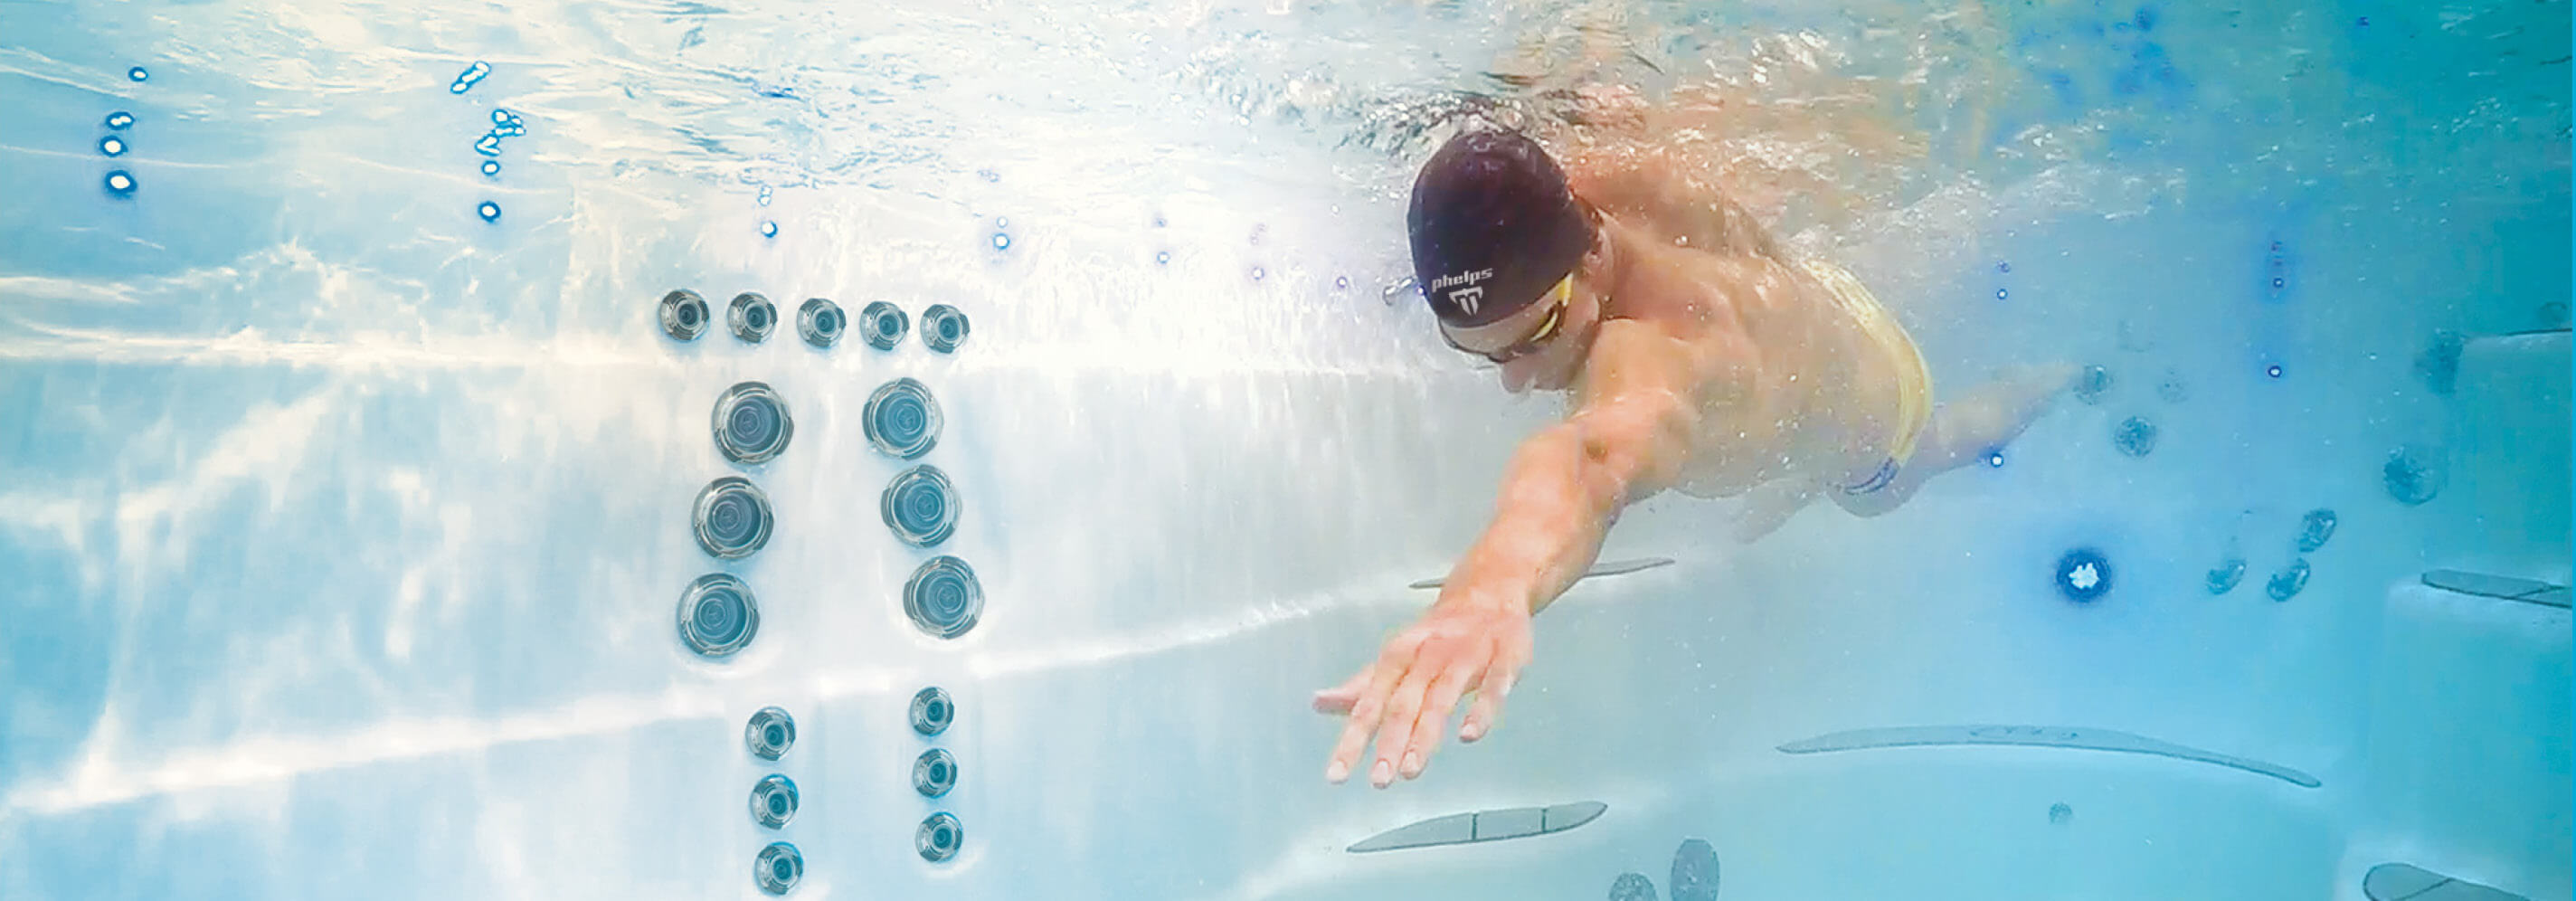 Michael Phelps schwimmt in einem Michael Phelps Signature Swim Spa von Master Spas